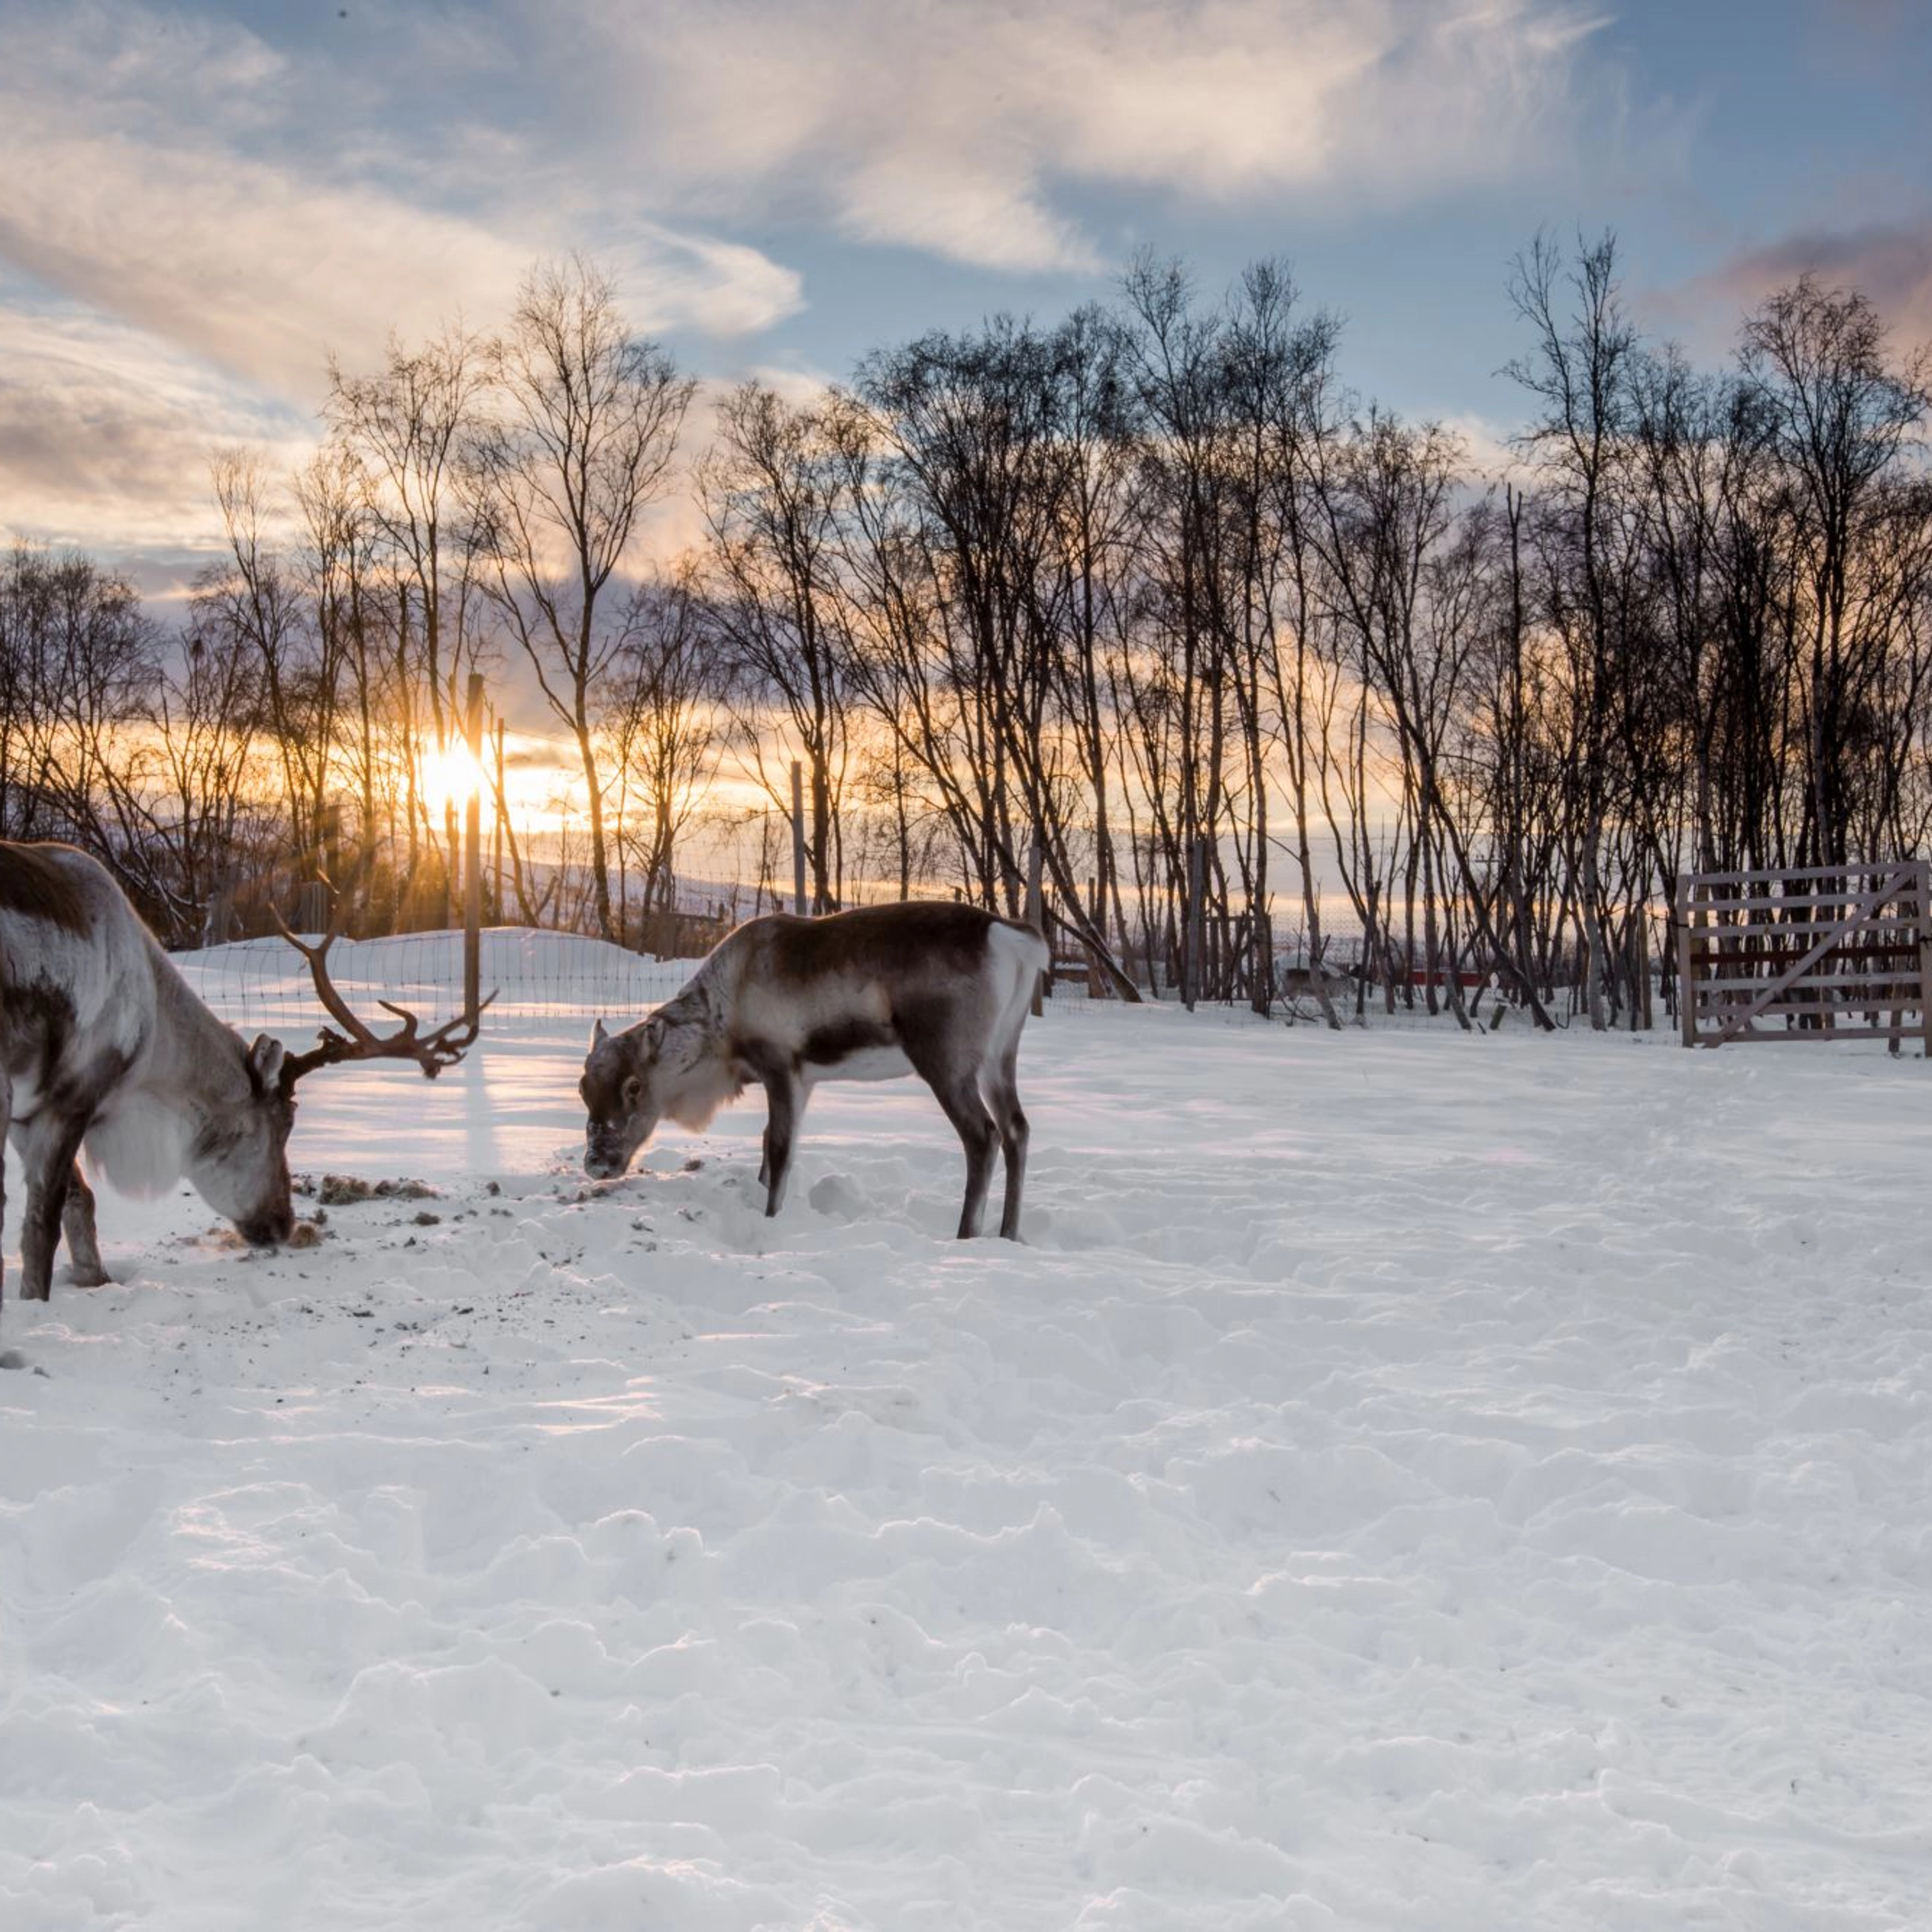 Reindeer in the arctic, Norway